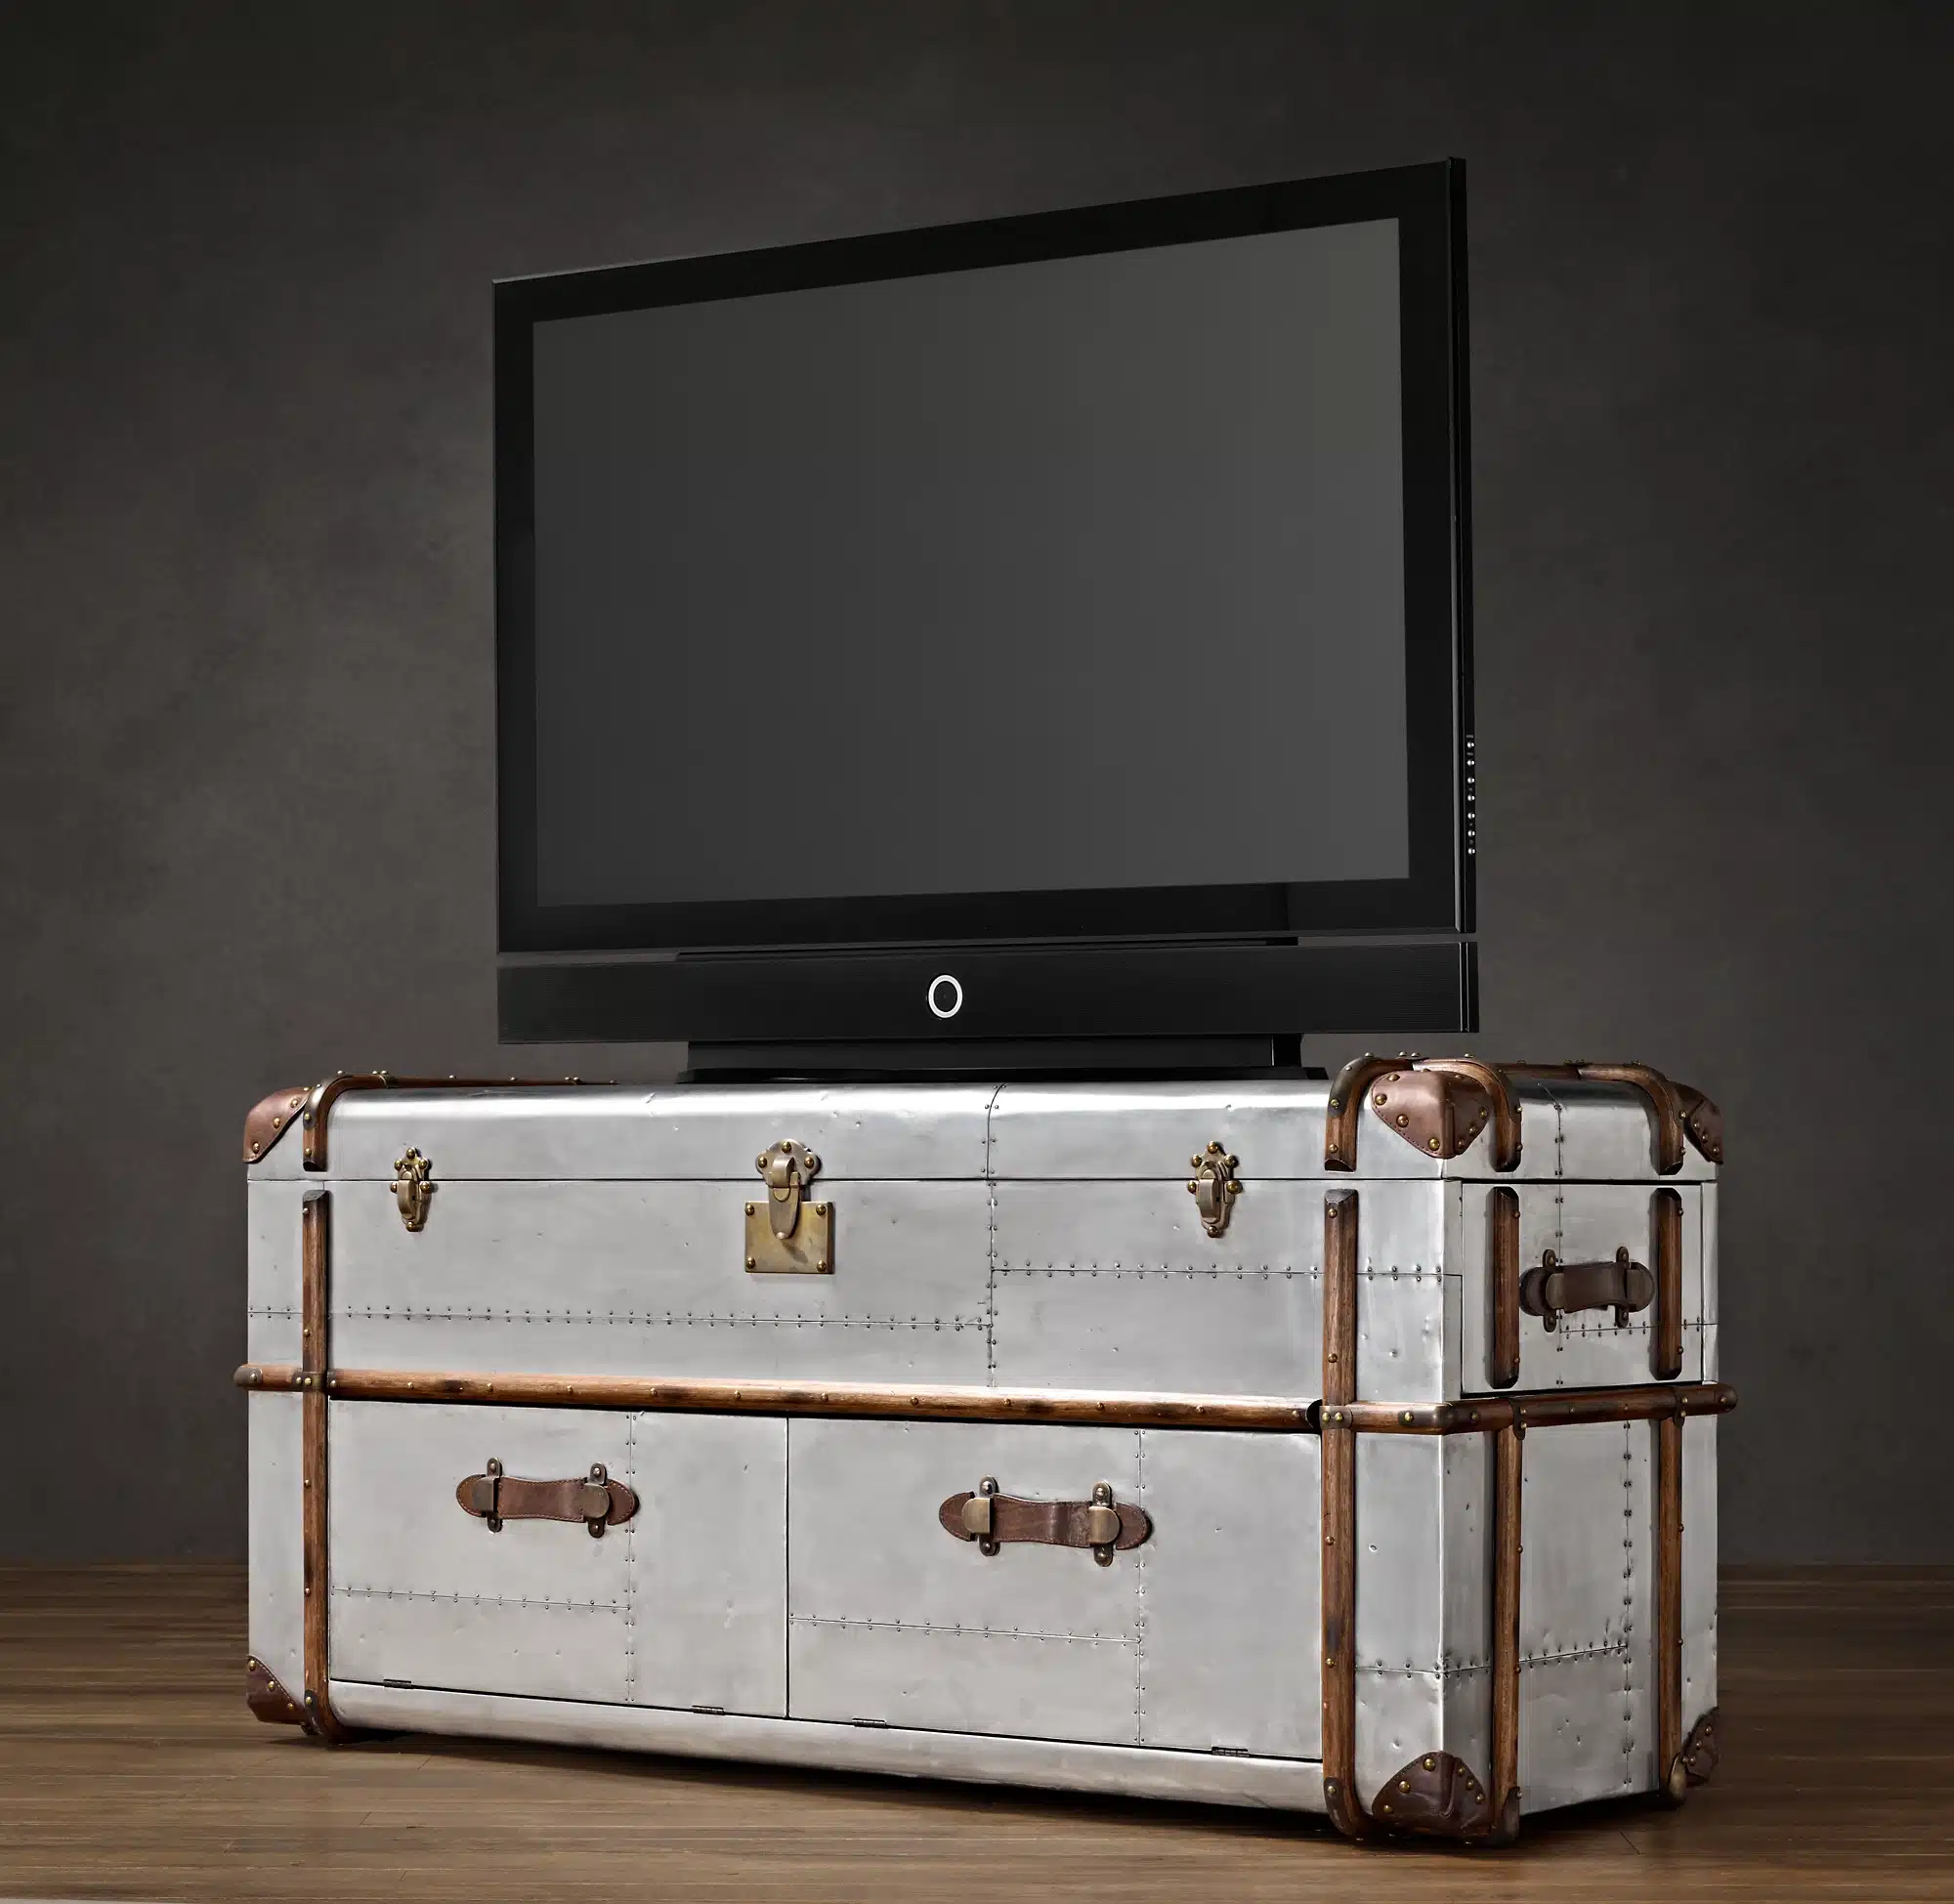 Het Trunk TV meubel is een heel handig aluminium patchwork kast uit de Richards' Trunk collectie.